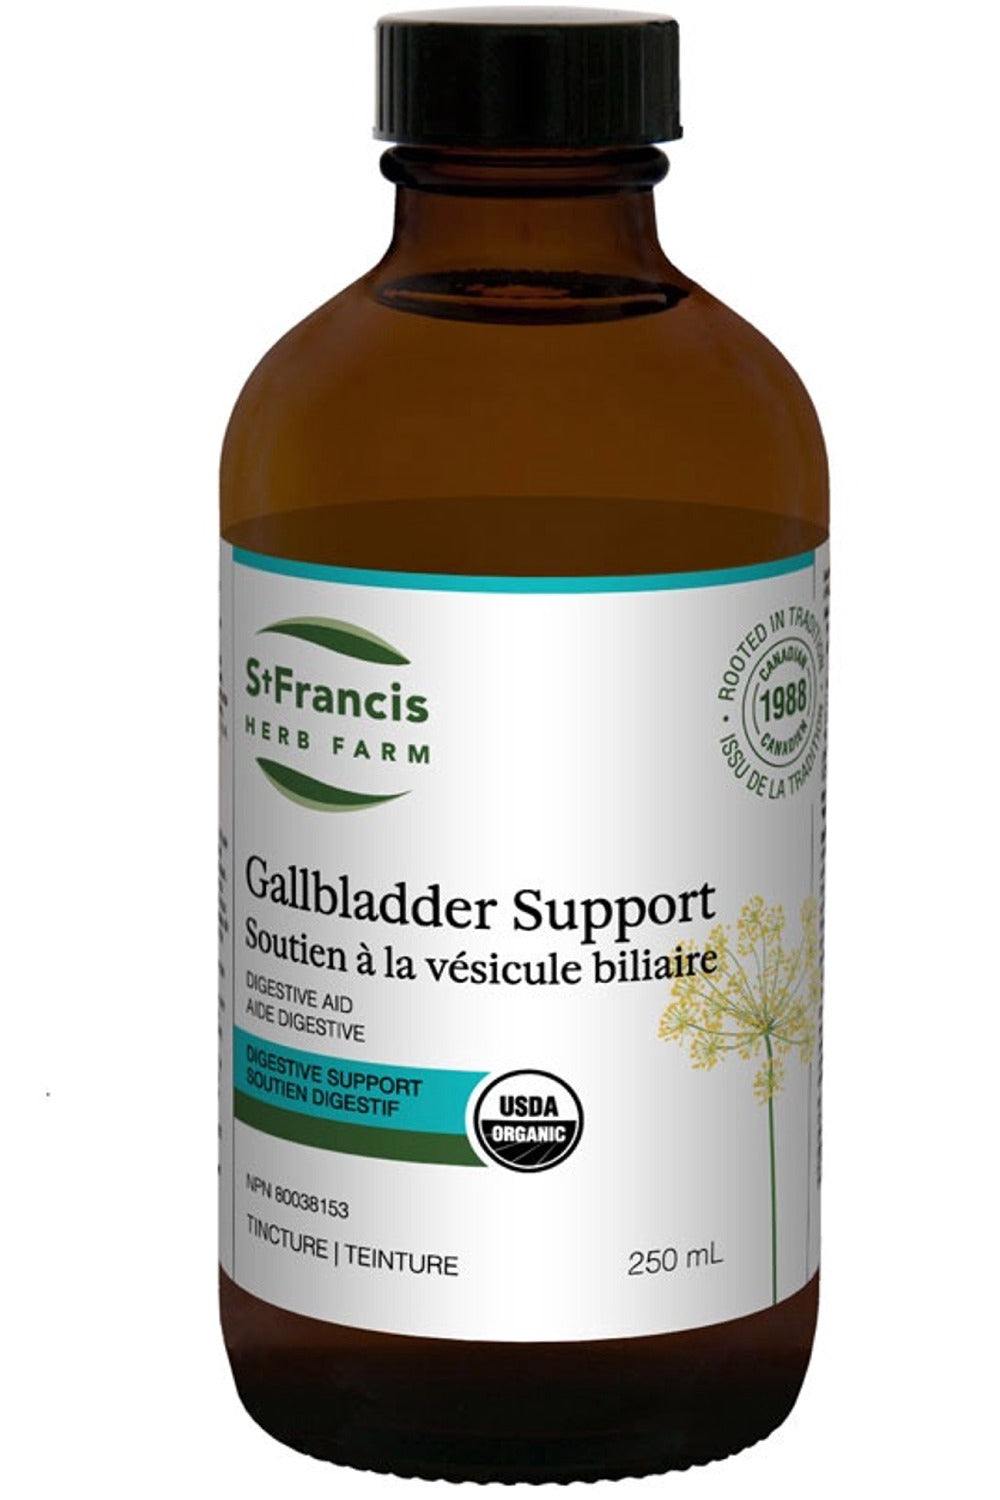 ST FRANCIS HERB FARM Gallbladder Support (250 ml)